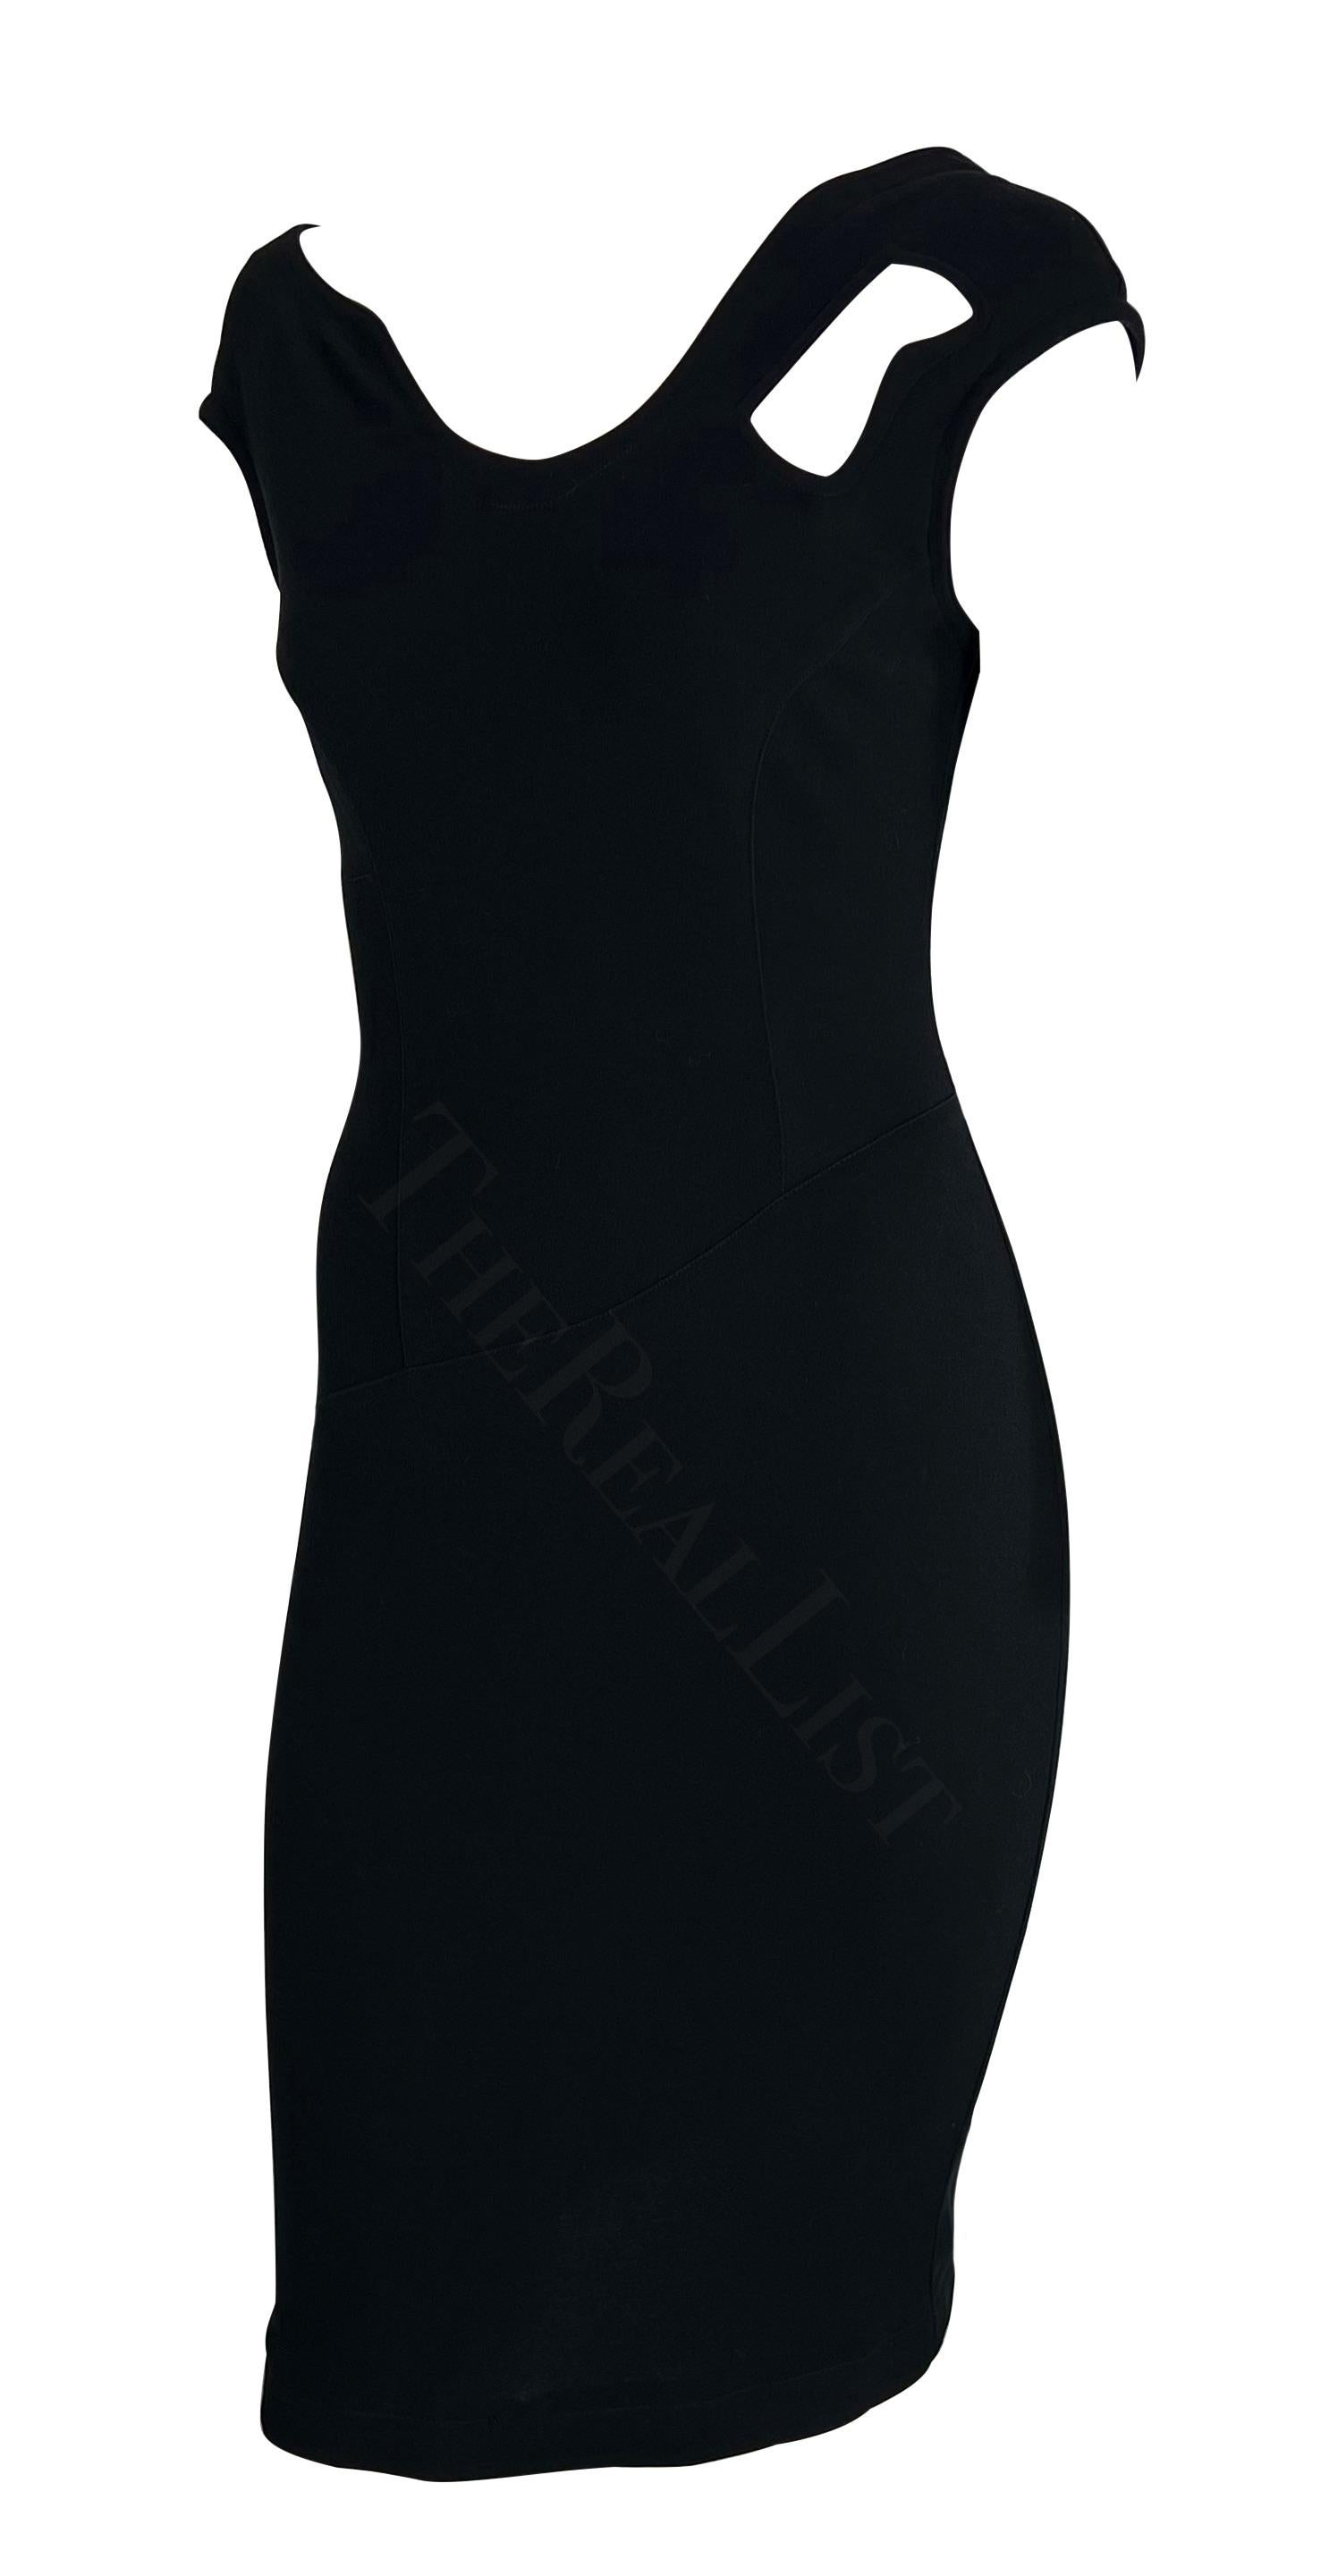 Voici une magnifique robe noire Thierry Mugler, créée par Manfred Mugler. Datant des années 1990, cette robe ajustée présente des bretelles décolletées, une encolure asymétrique, un dos échancré et une découpe abstraite sur le devant. Cette petite